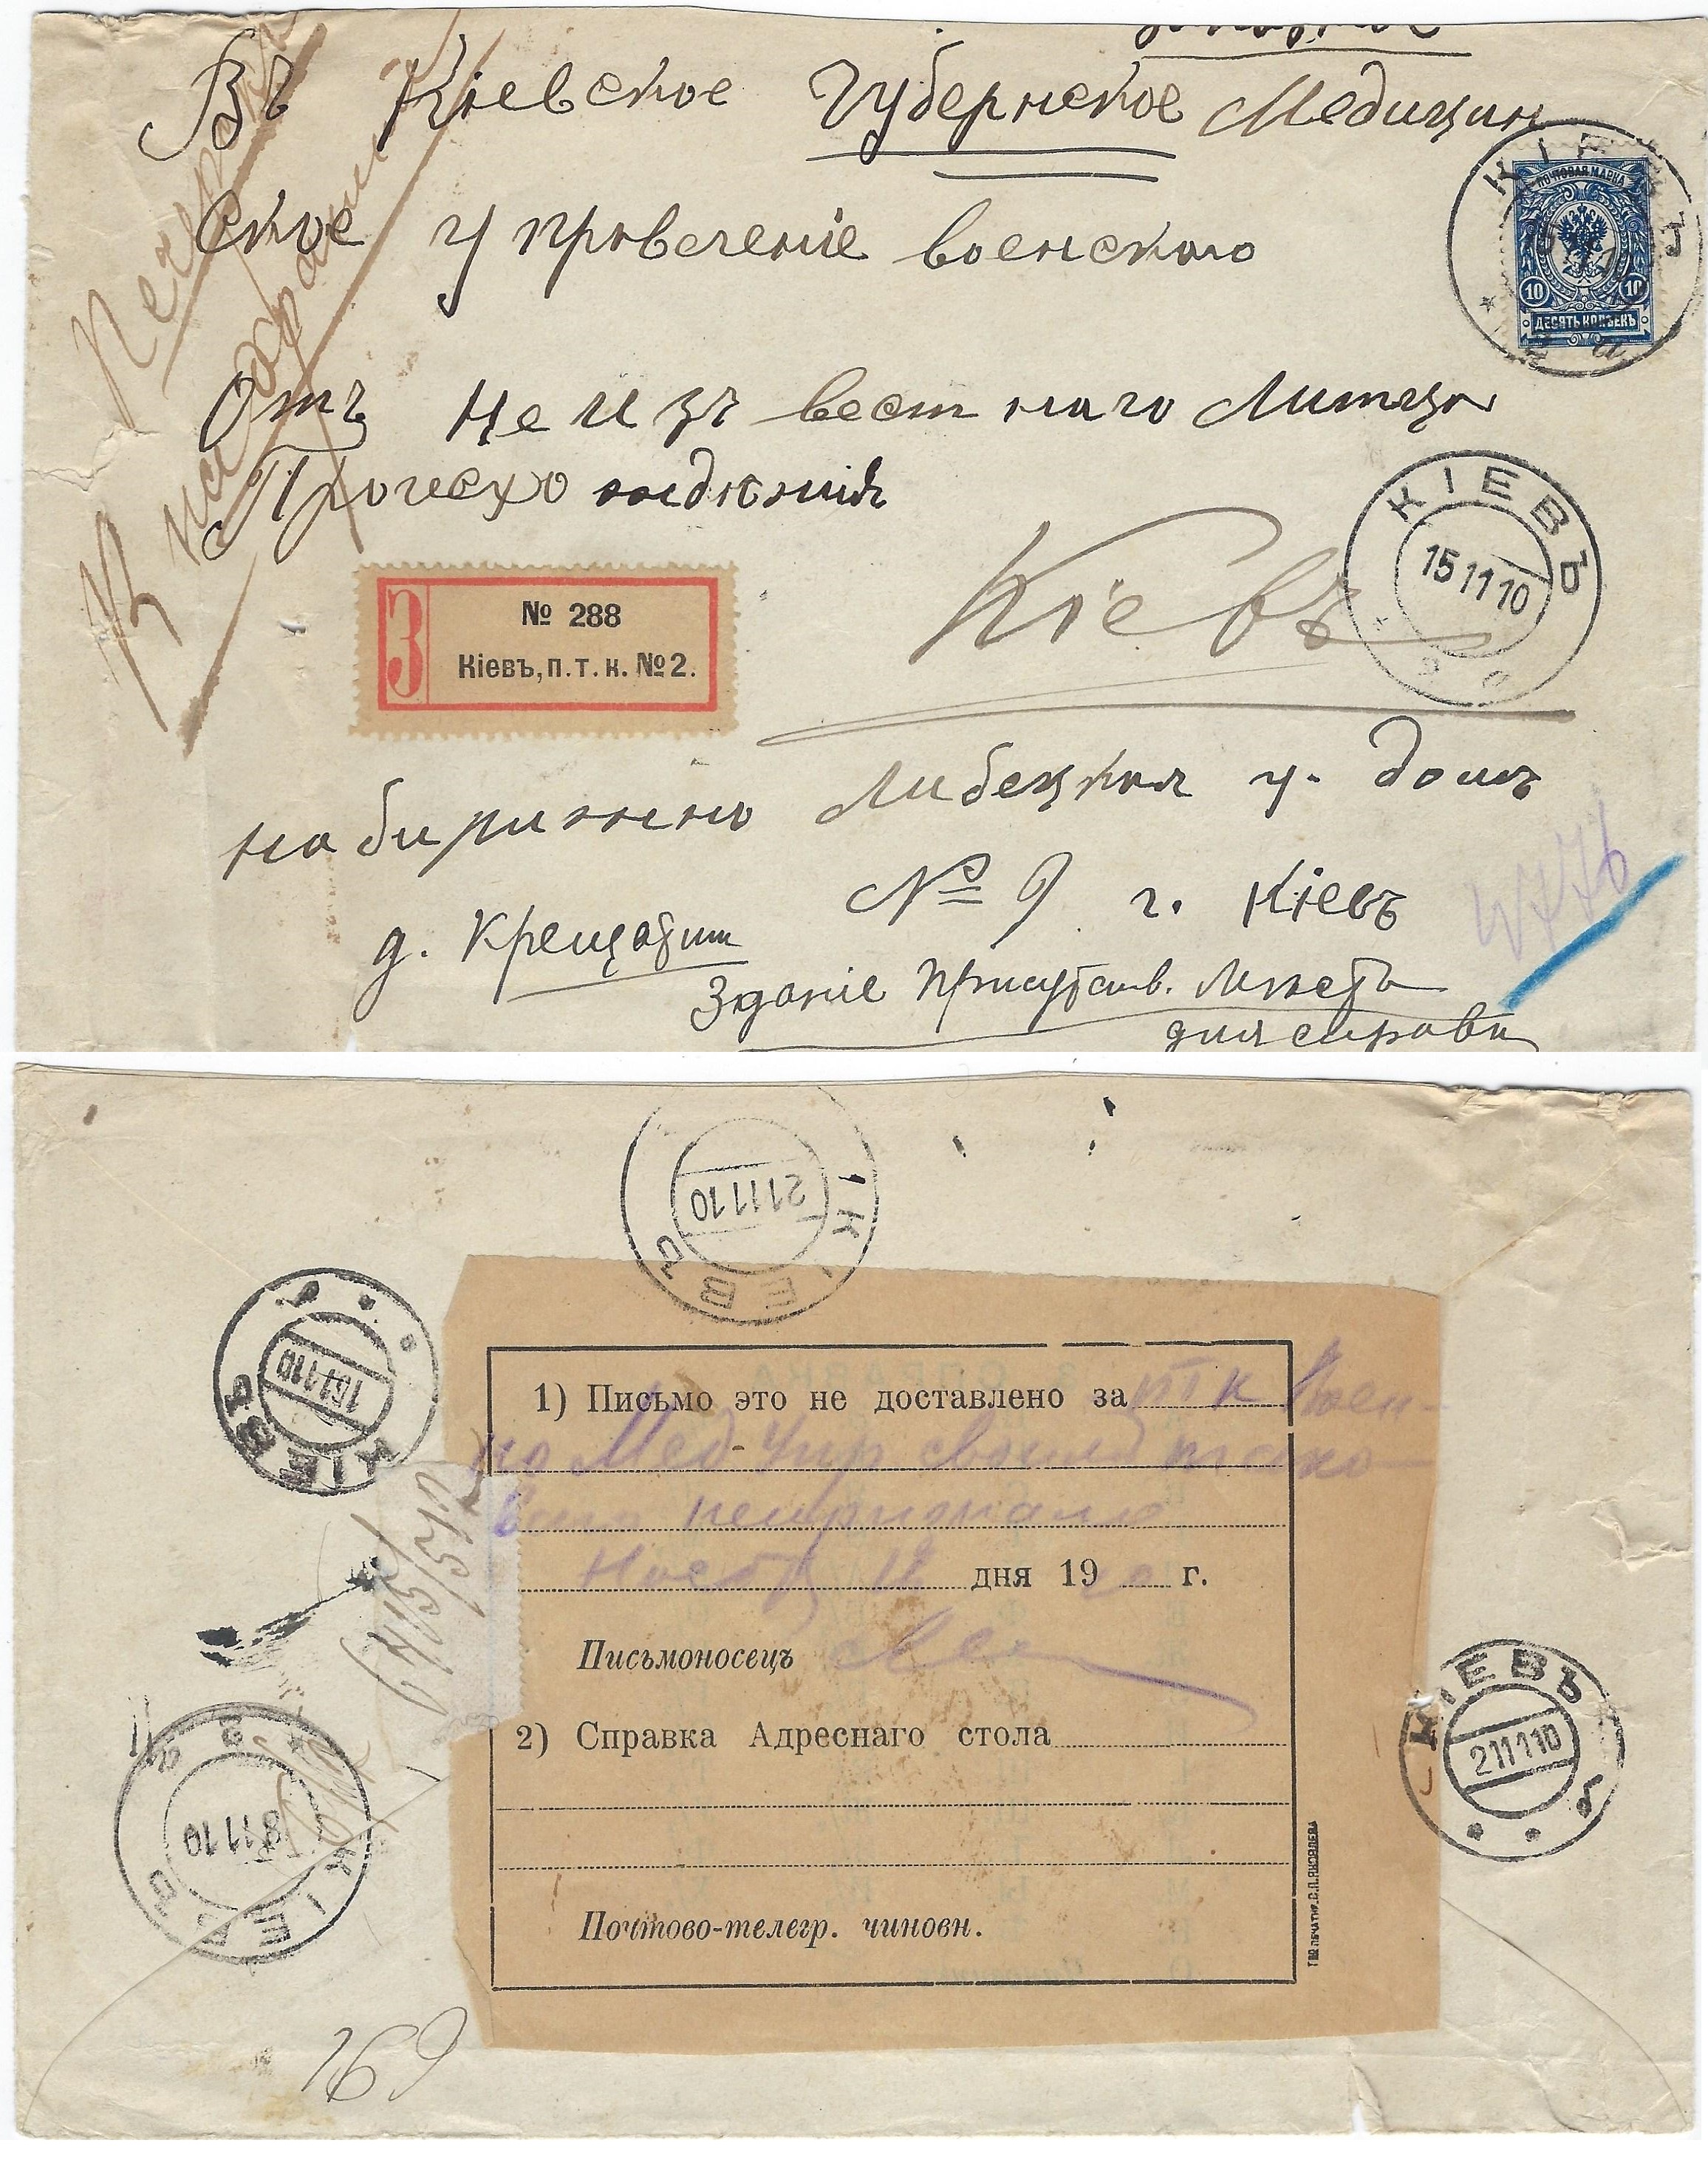 Russia Postal History - Postal Documents, Receipts Scott 1910 